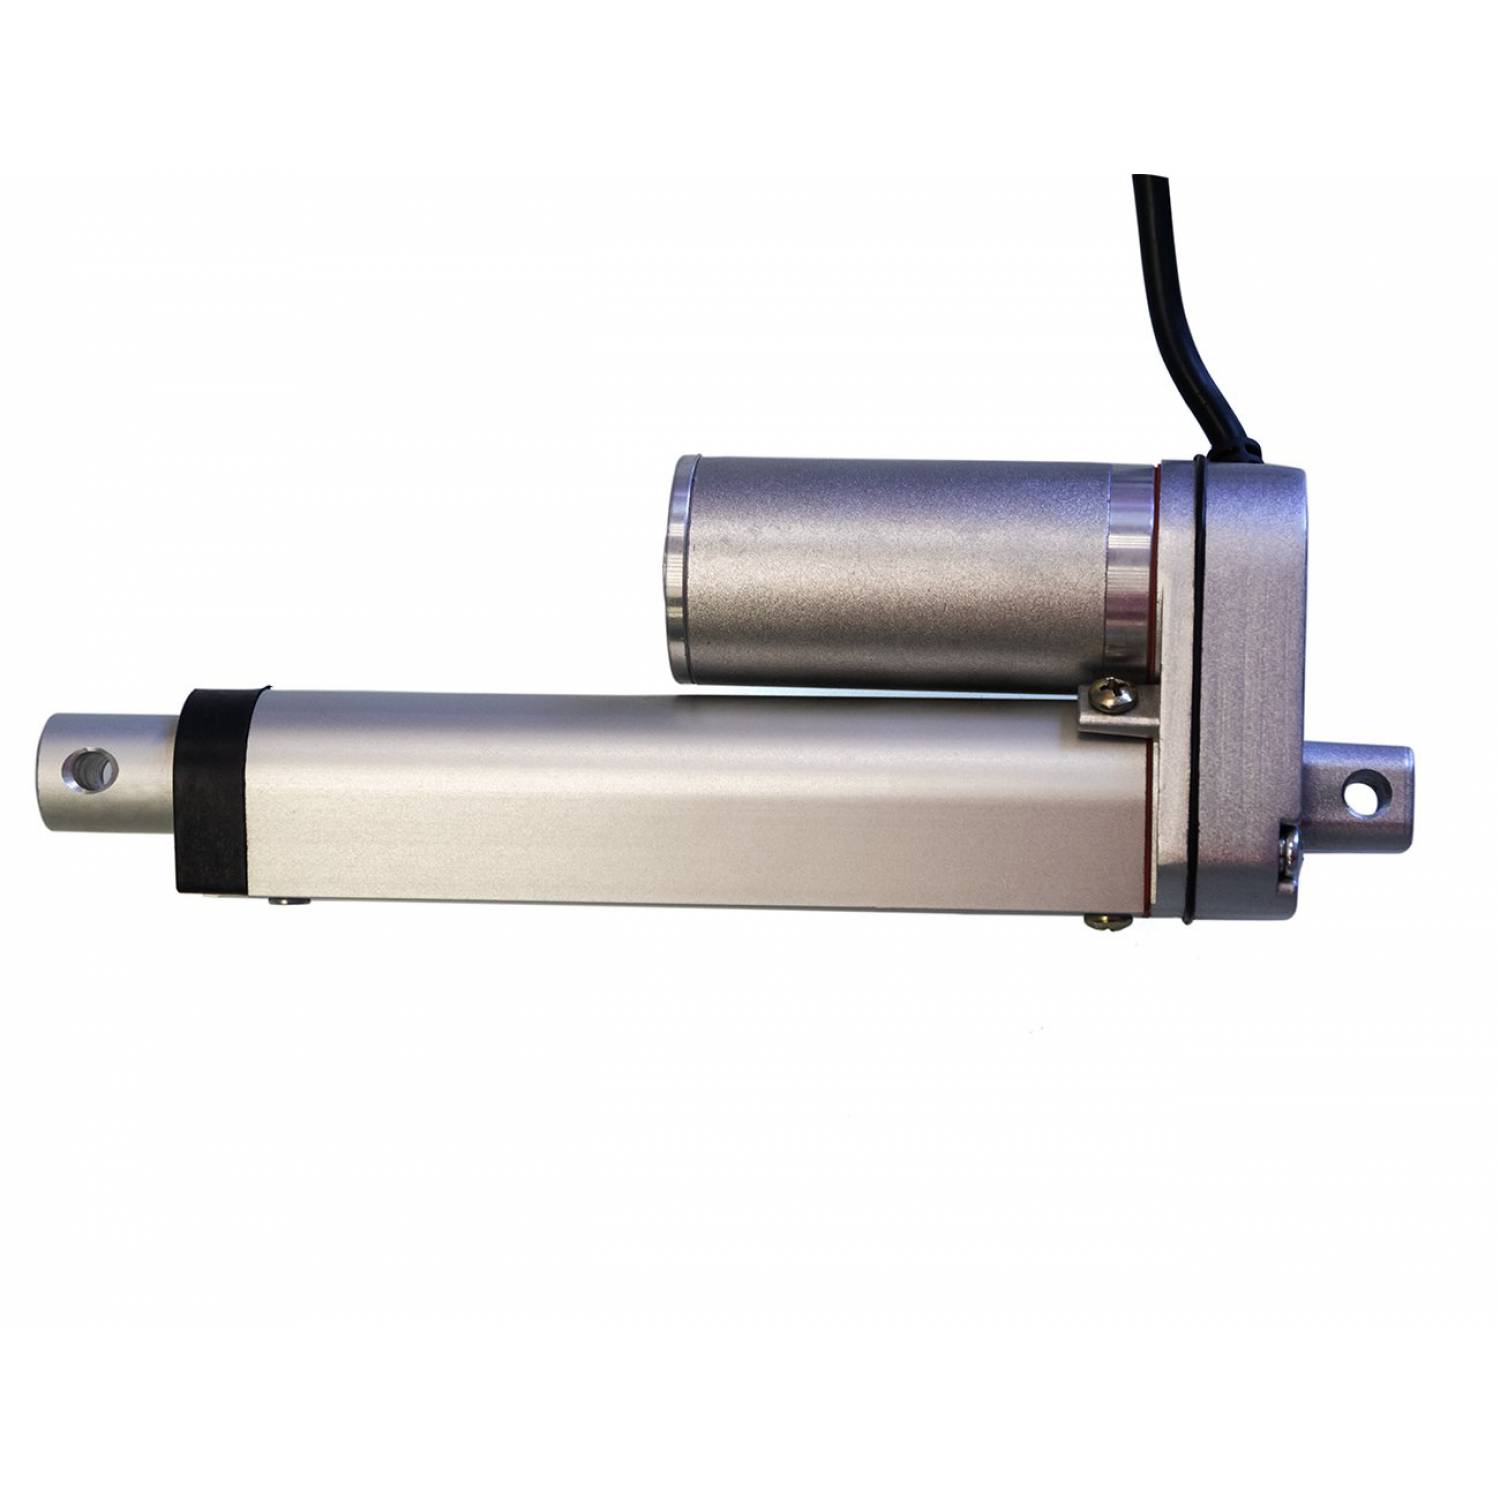 Актуатор (линейный привод) длина 500 мм, питание 12 вольт , нагрузка до 130 кг, скорость 7 мм/сек